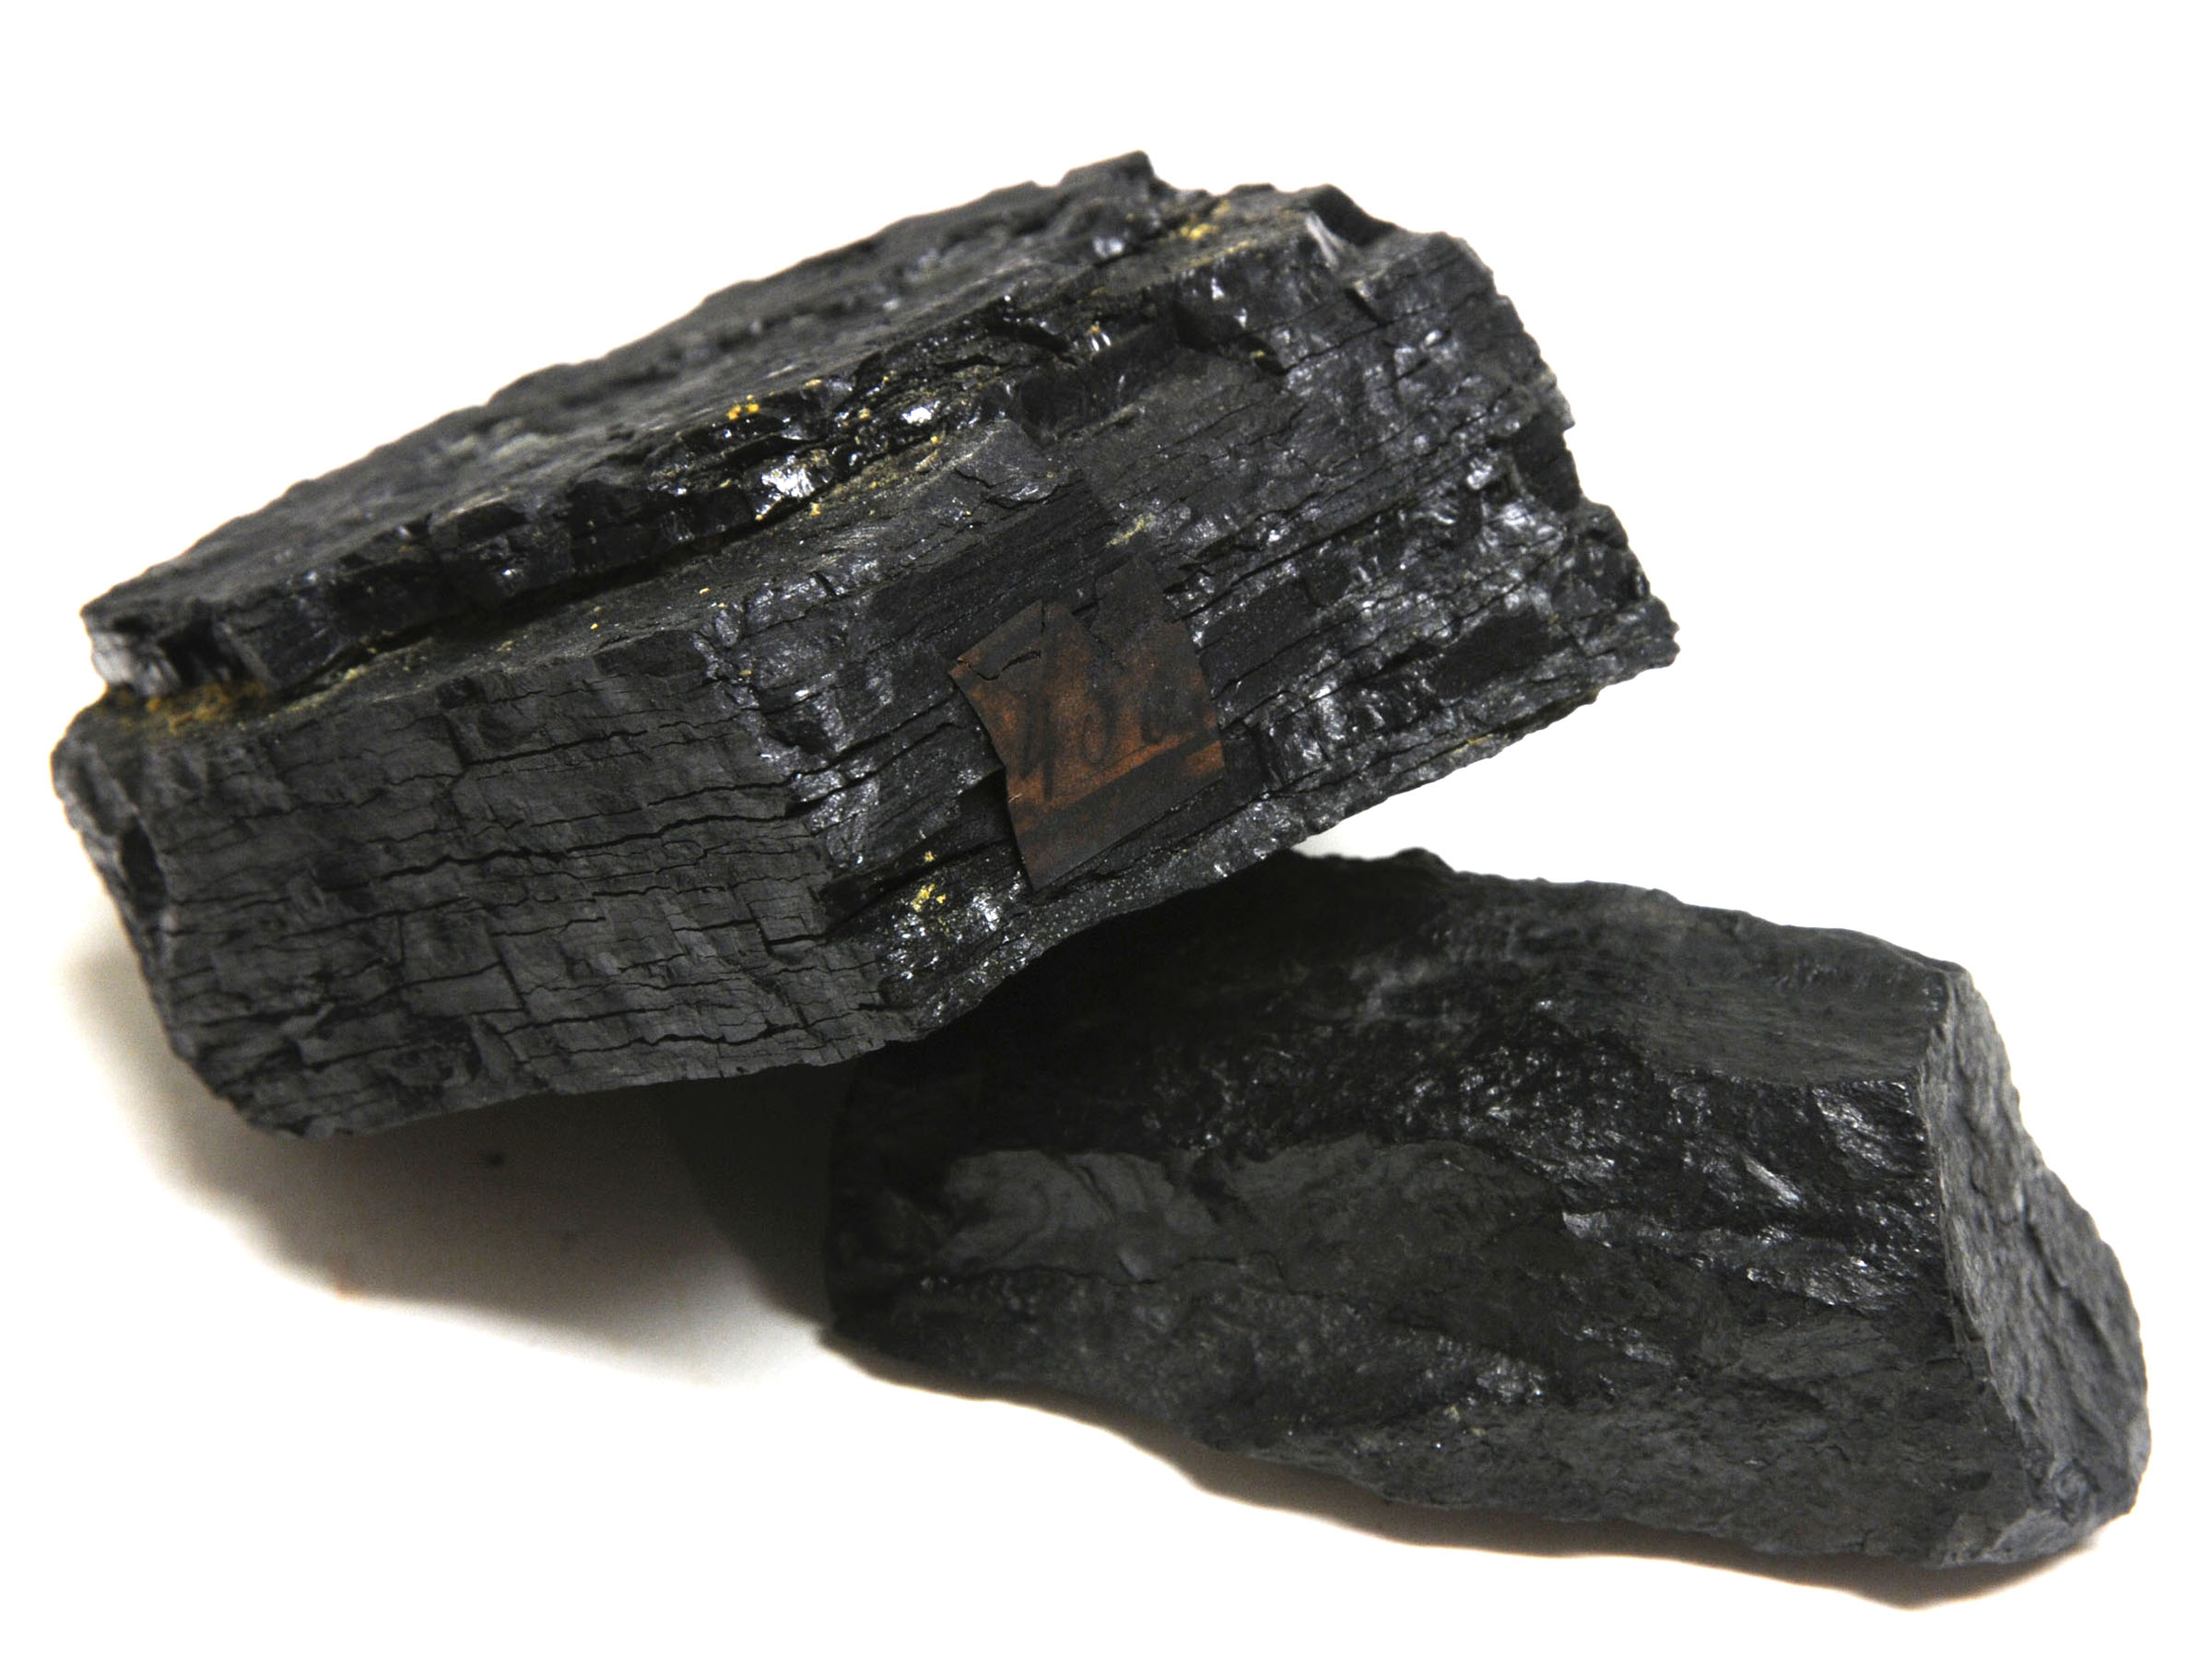 Черная кристаллическая порода. Уголь бурый каменный антрацит. Бурый уголь лигнит. Битуминозный каменный уголь. Бурый уголь (лигниты), каменный уголь, антрацит, графит..